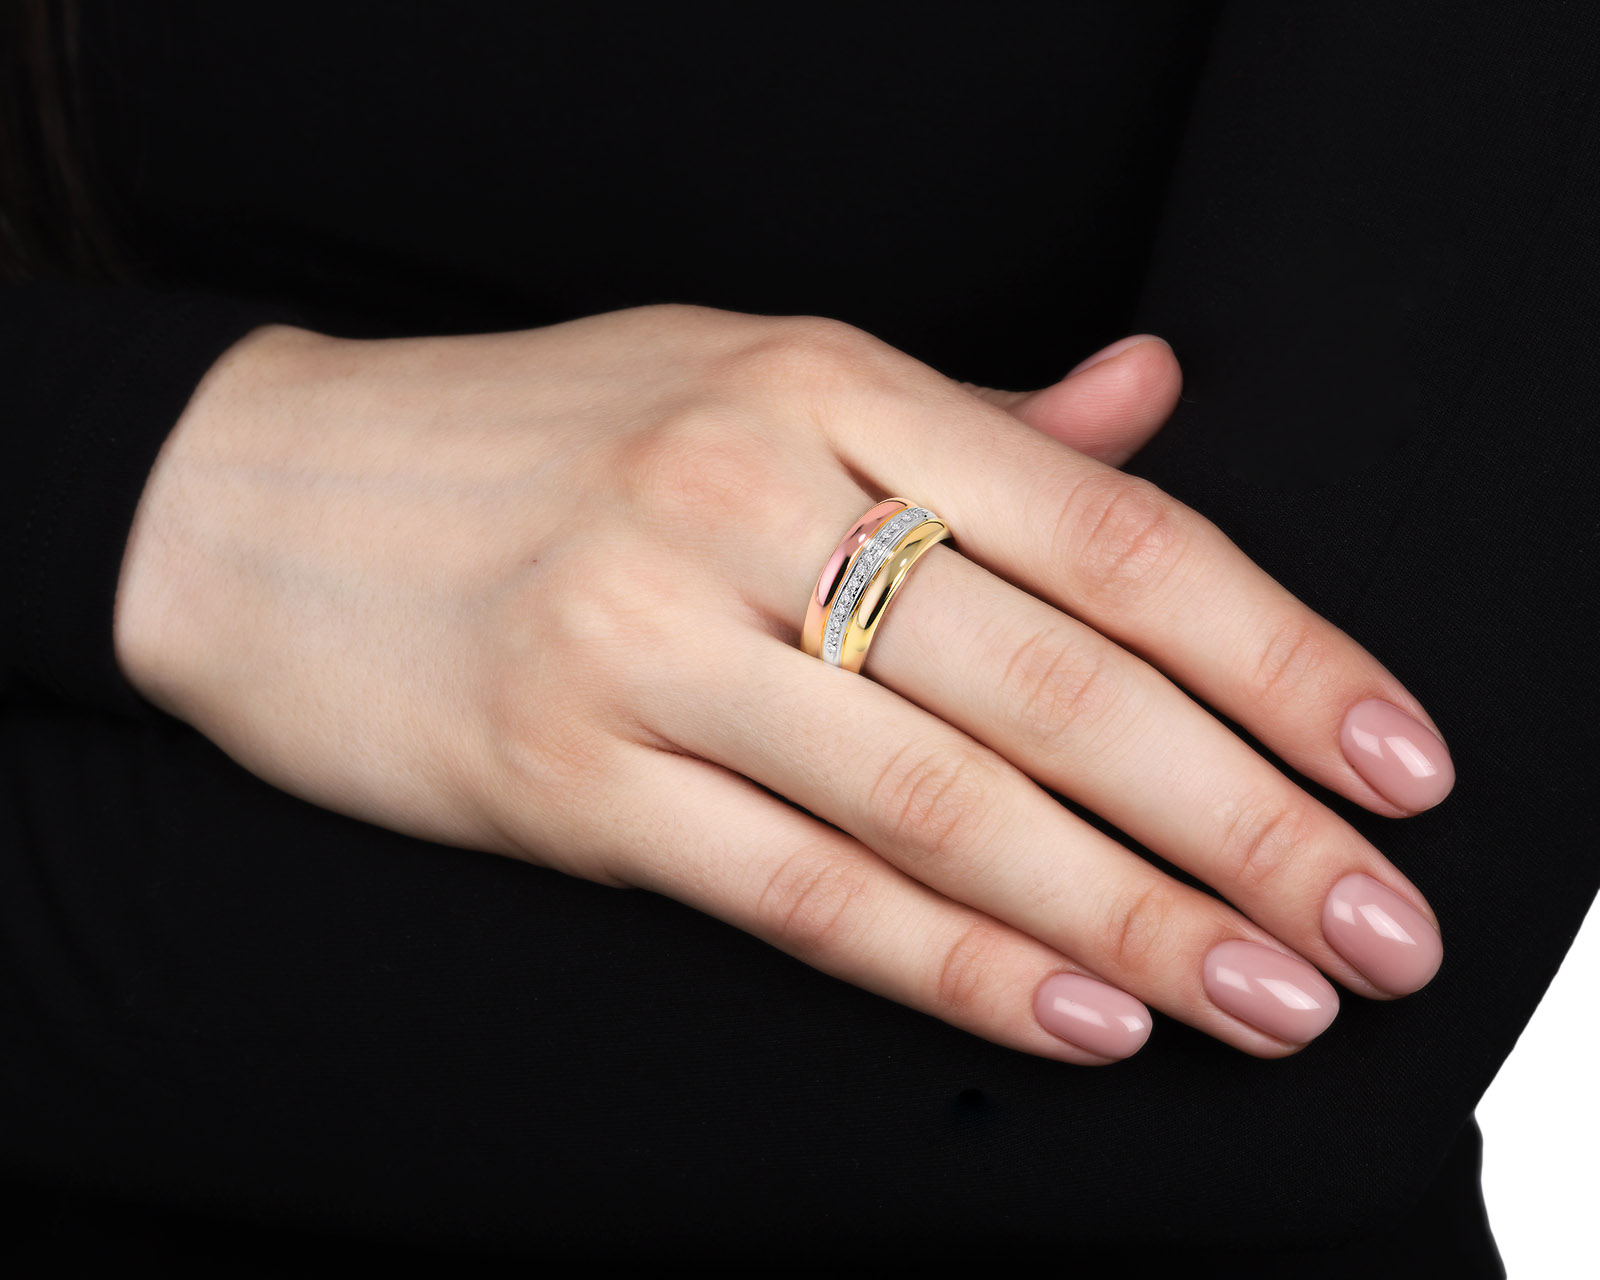 Стильное золотое кольцо с бриллиантами 0.13ct